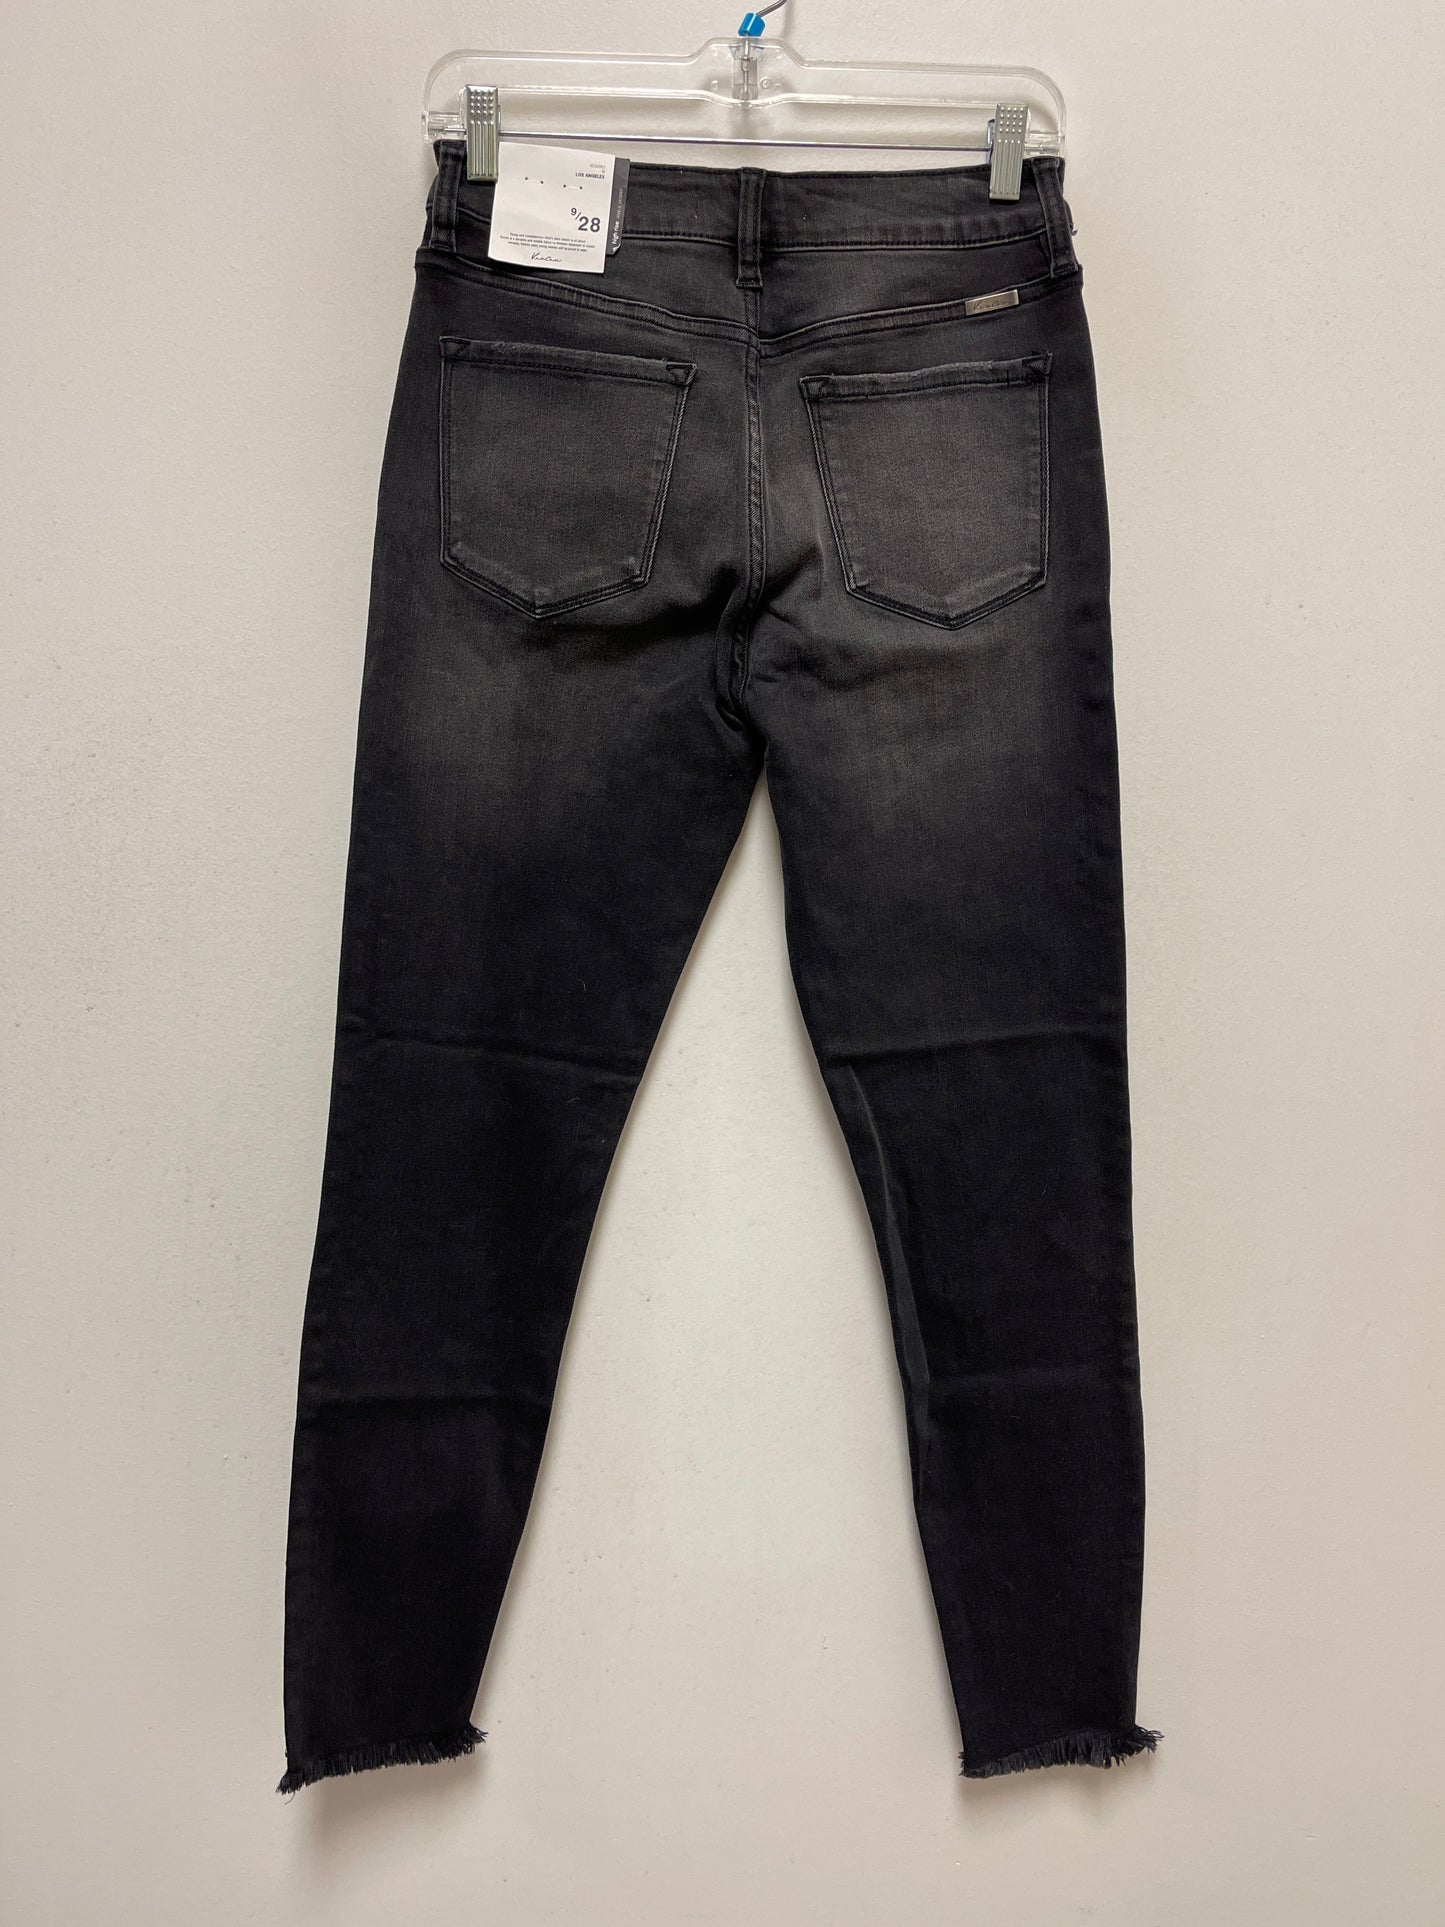 Black Denim Jeans Skinny Kancan, Size 8